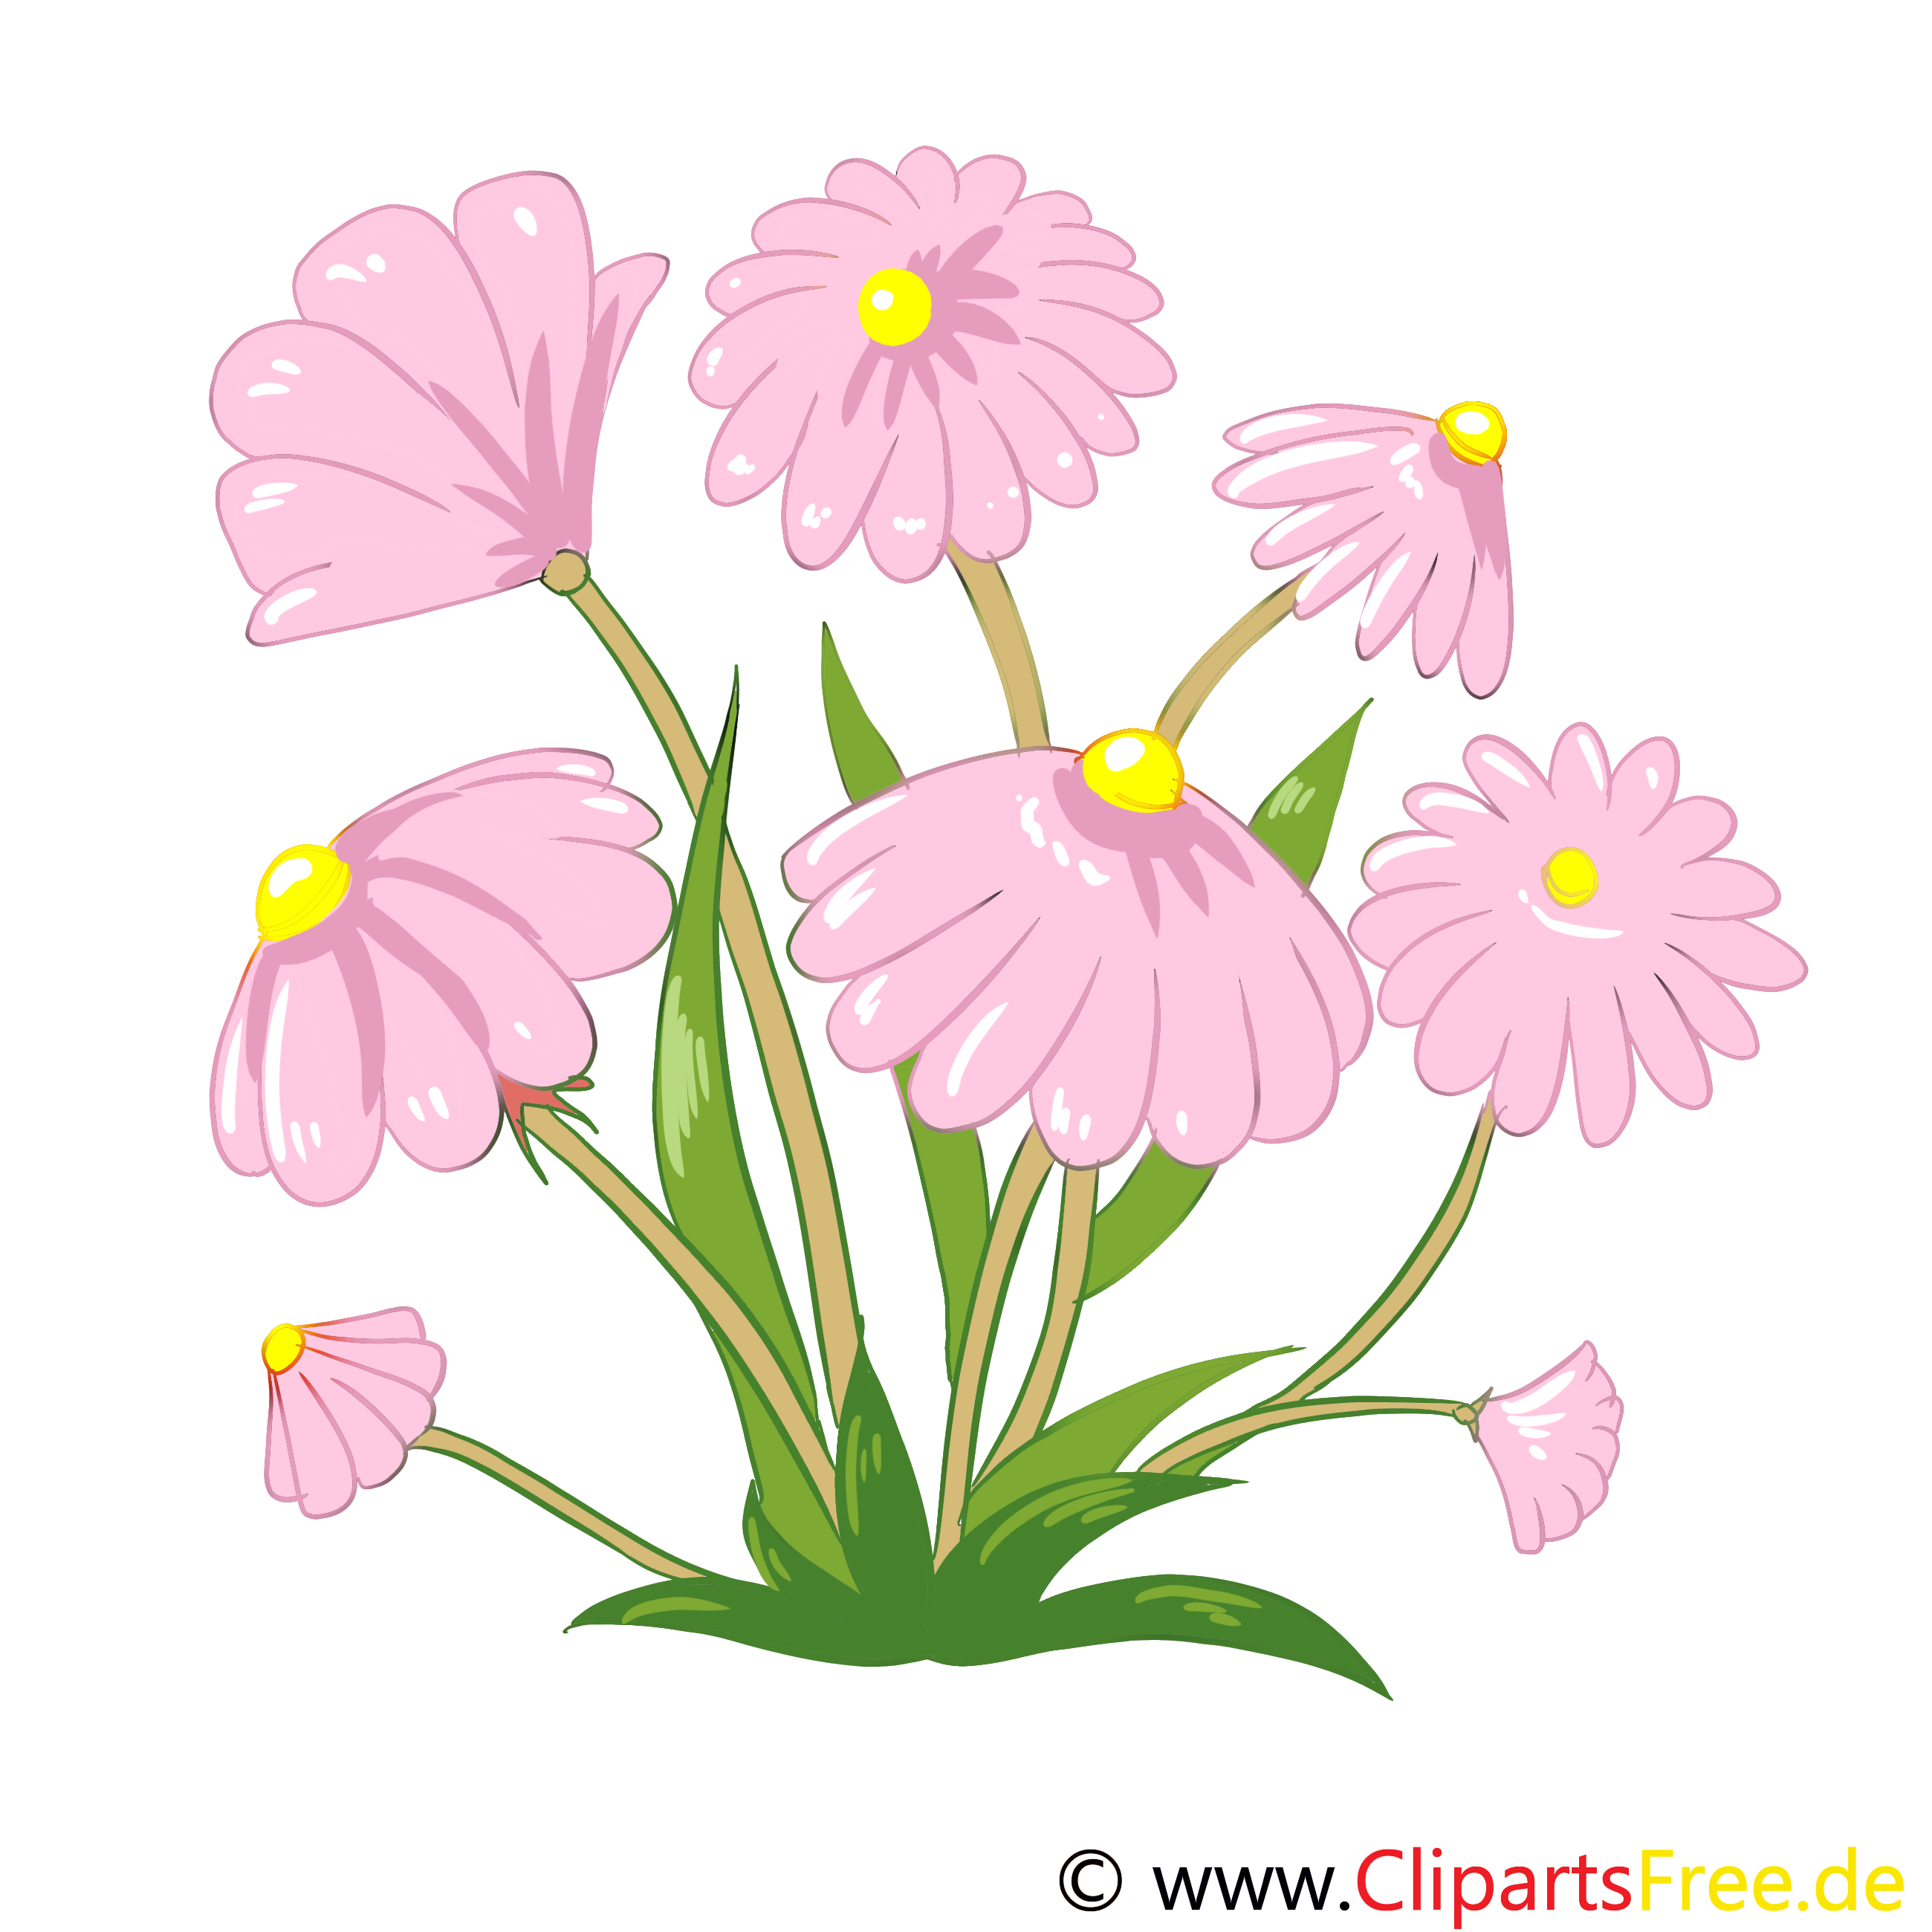 images clipart gratuites fleurs - photo #6